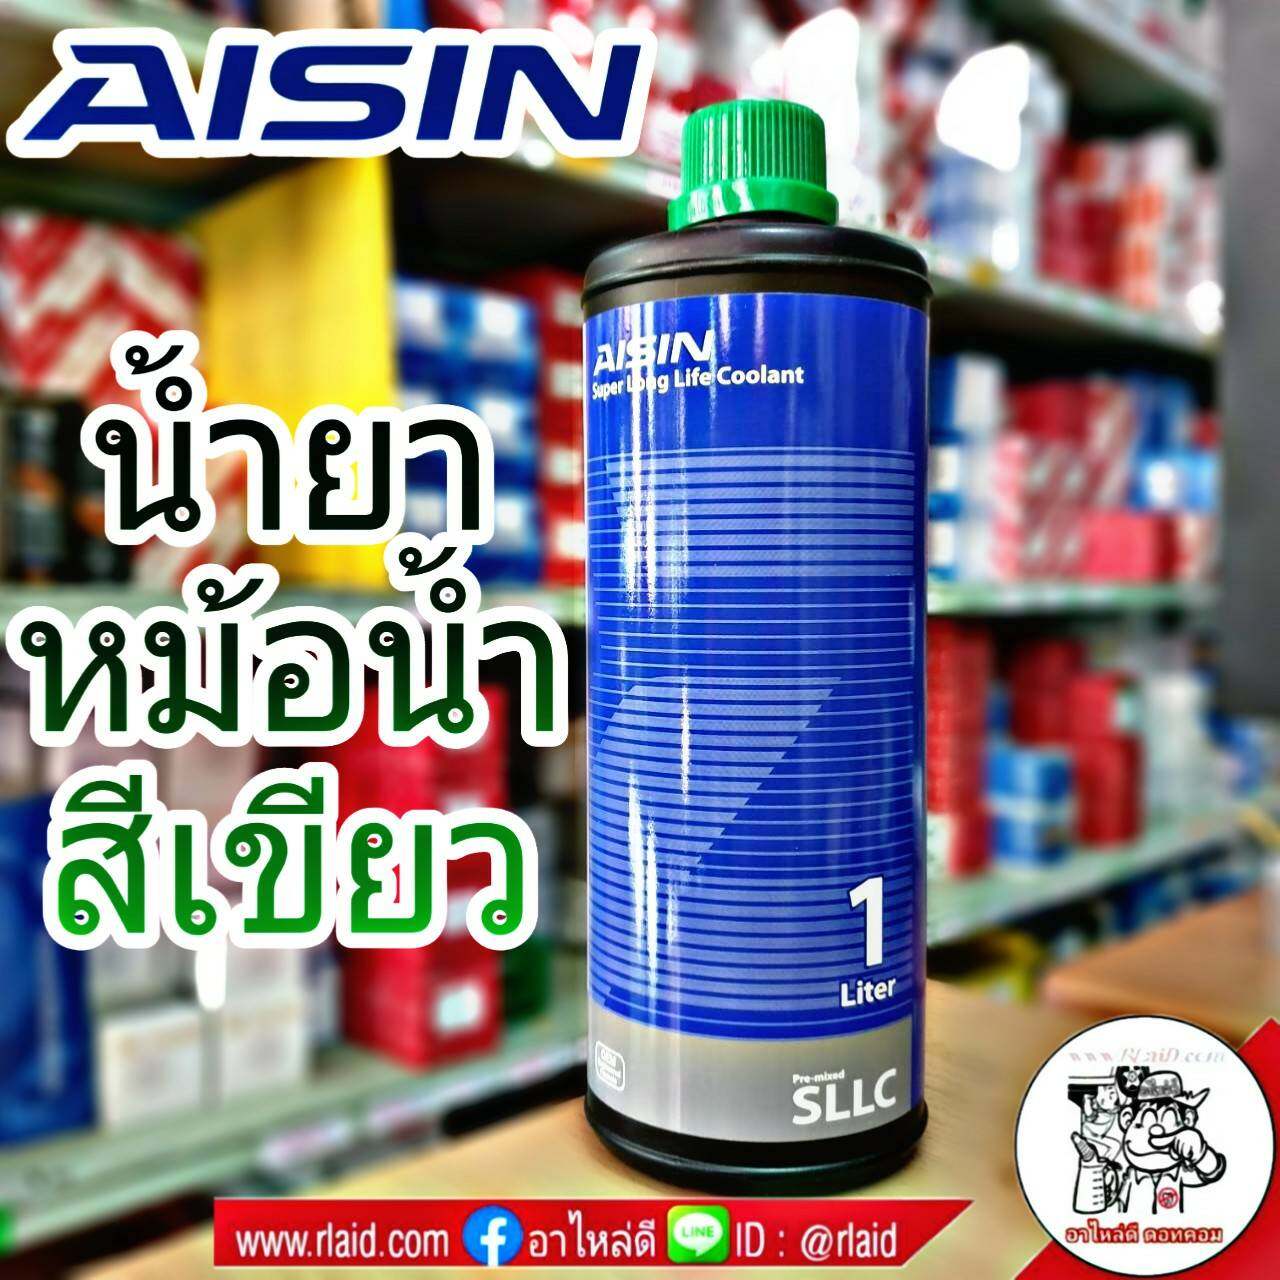 AISIN คูลแลนท์ ไอซิน สีเขียว 1ลิตร น้ำยาหม้อน้ำ น้ำยาเติมหม้อน้ำ น้ำยาหล่อเย็น Coolant